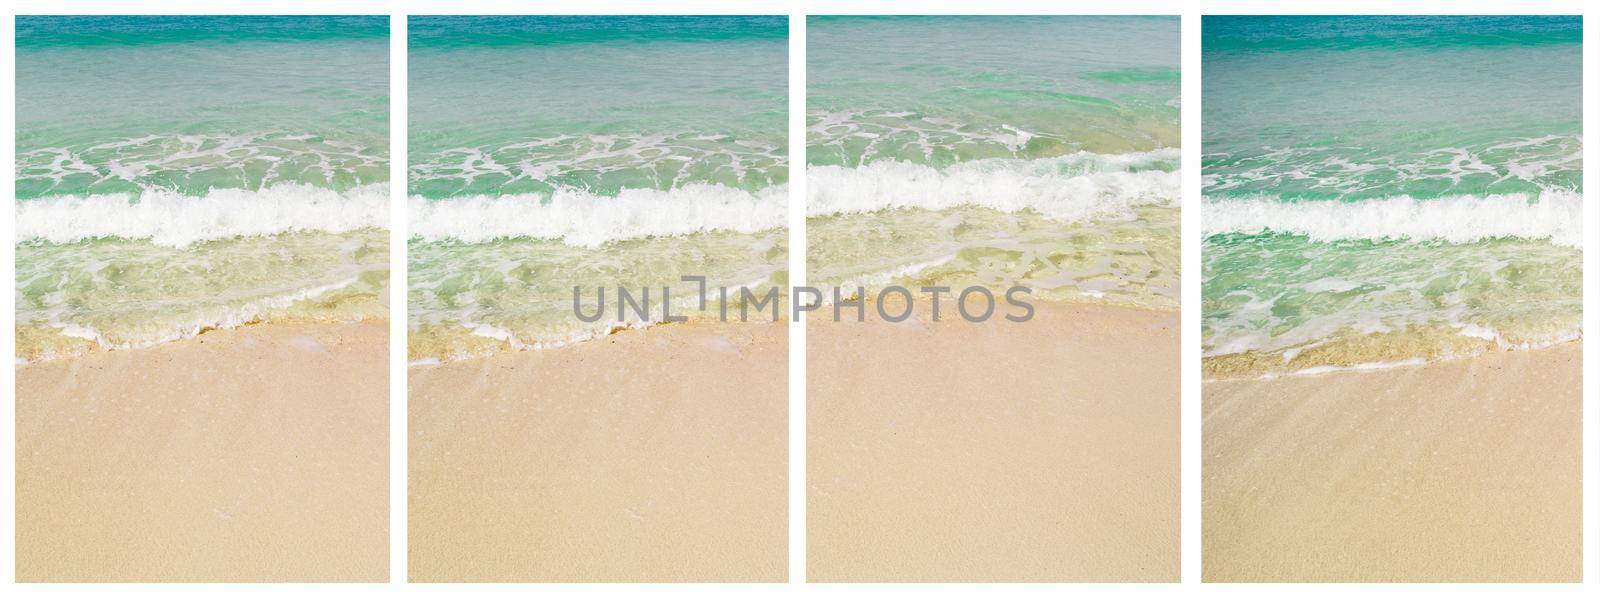 Beatiful sea view collage by tan4ikk1